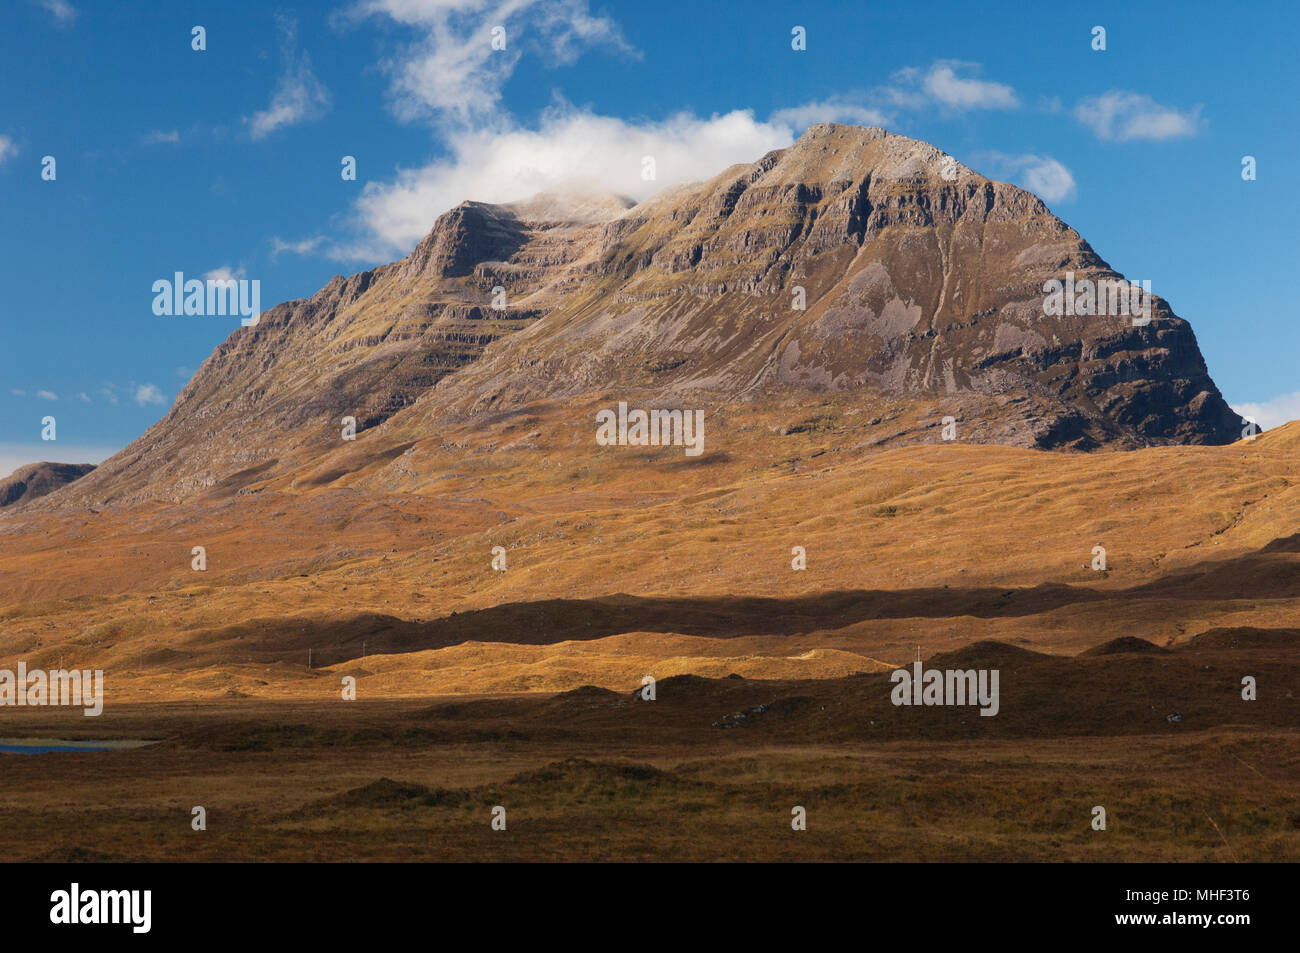 La montagne emblématique Liathach - Torridon, Ross-shire, les Highlands écossais. Banque D'Images